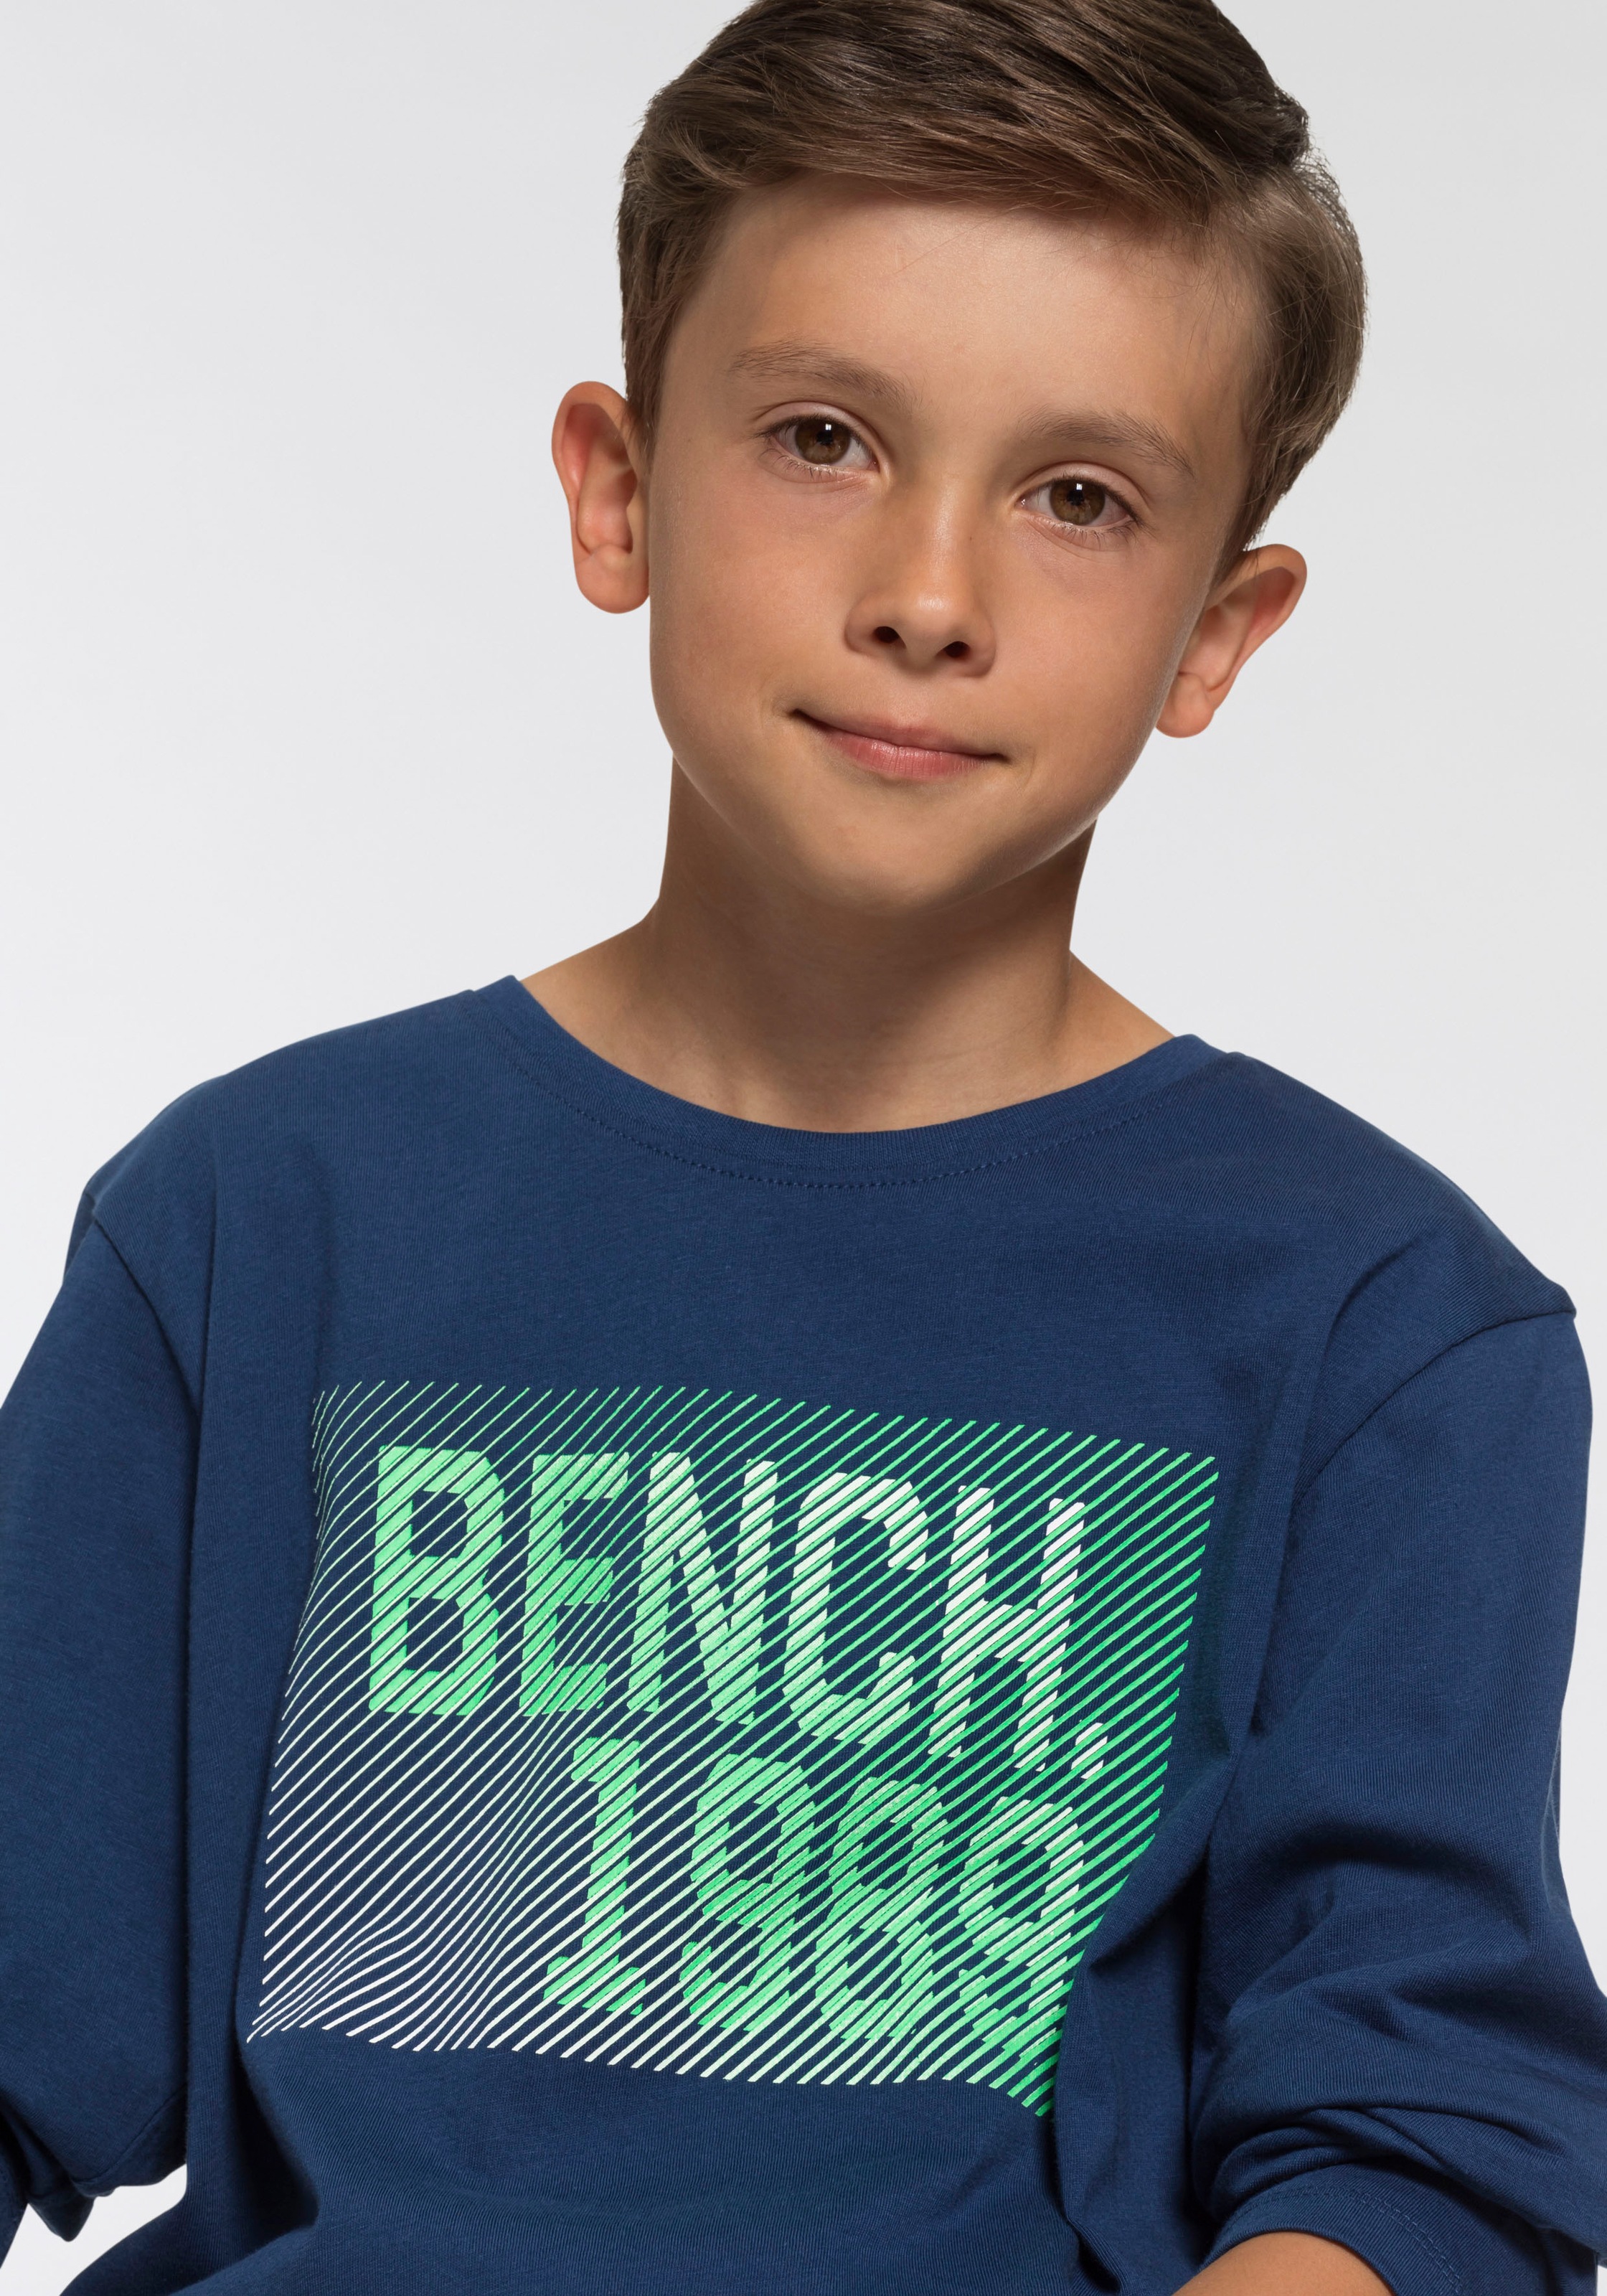 ✌ Bench. Langarmshirt, mit modischem Print Acheter en ligne